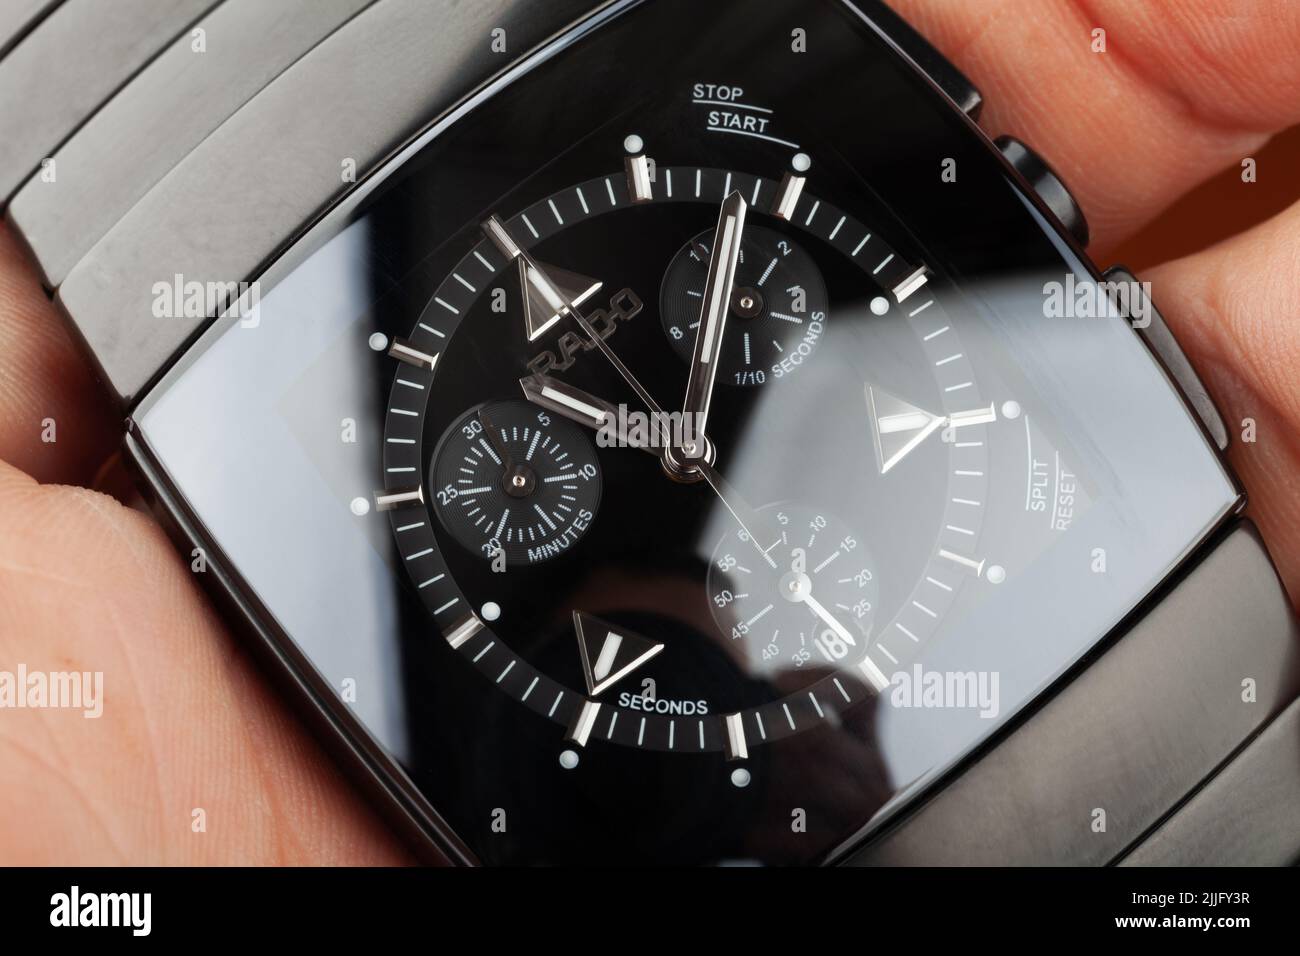 Saint-Pétersbourg, Russie - 18 juin 2015: Rado Sintra Chrono, mens montre chronographe en céramique de haute technologie avec verre saphir est dans une main mâle, ma Banque D'Images